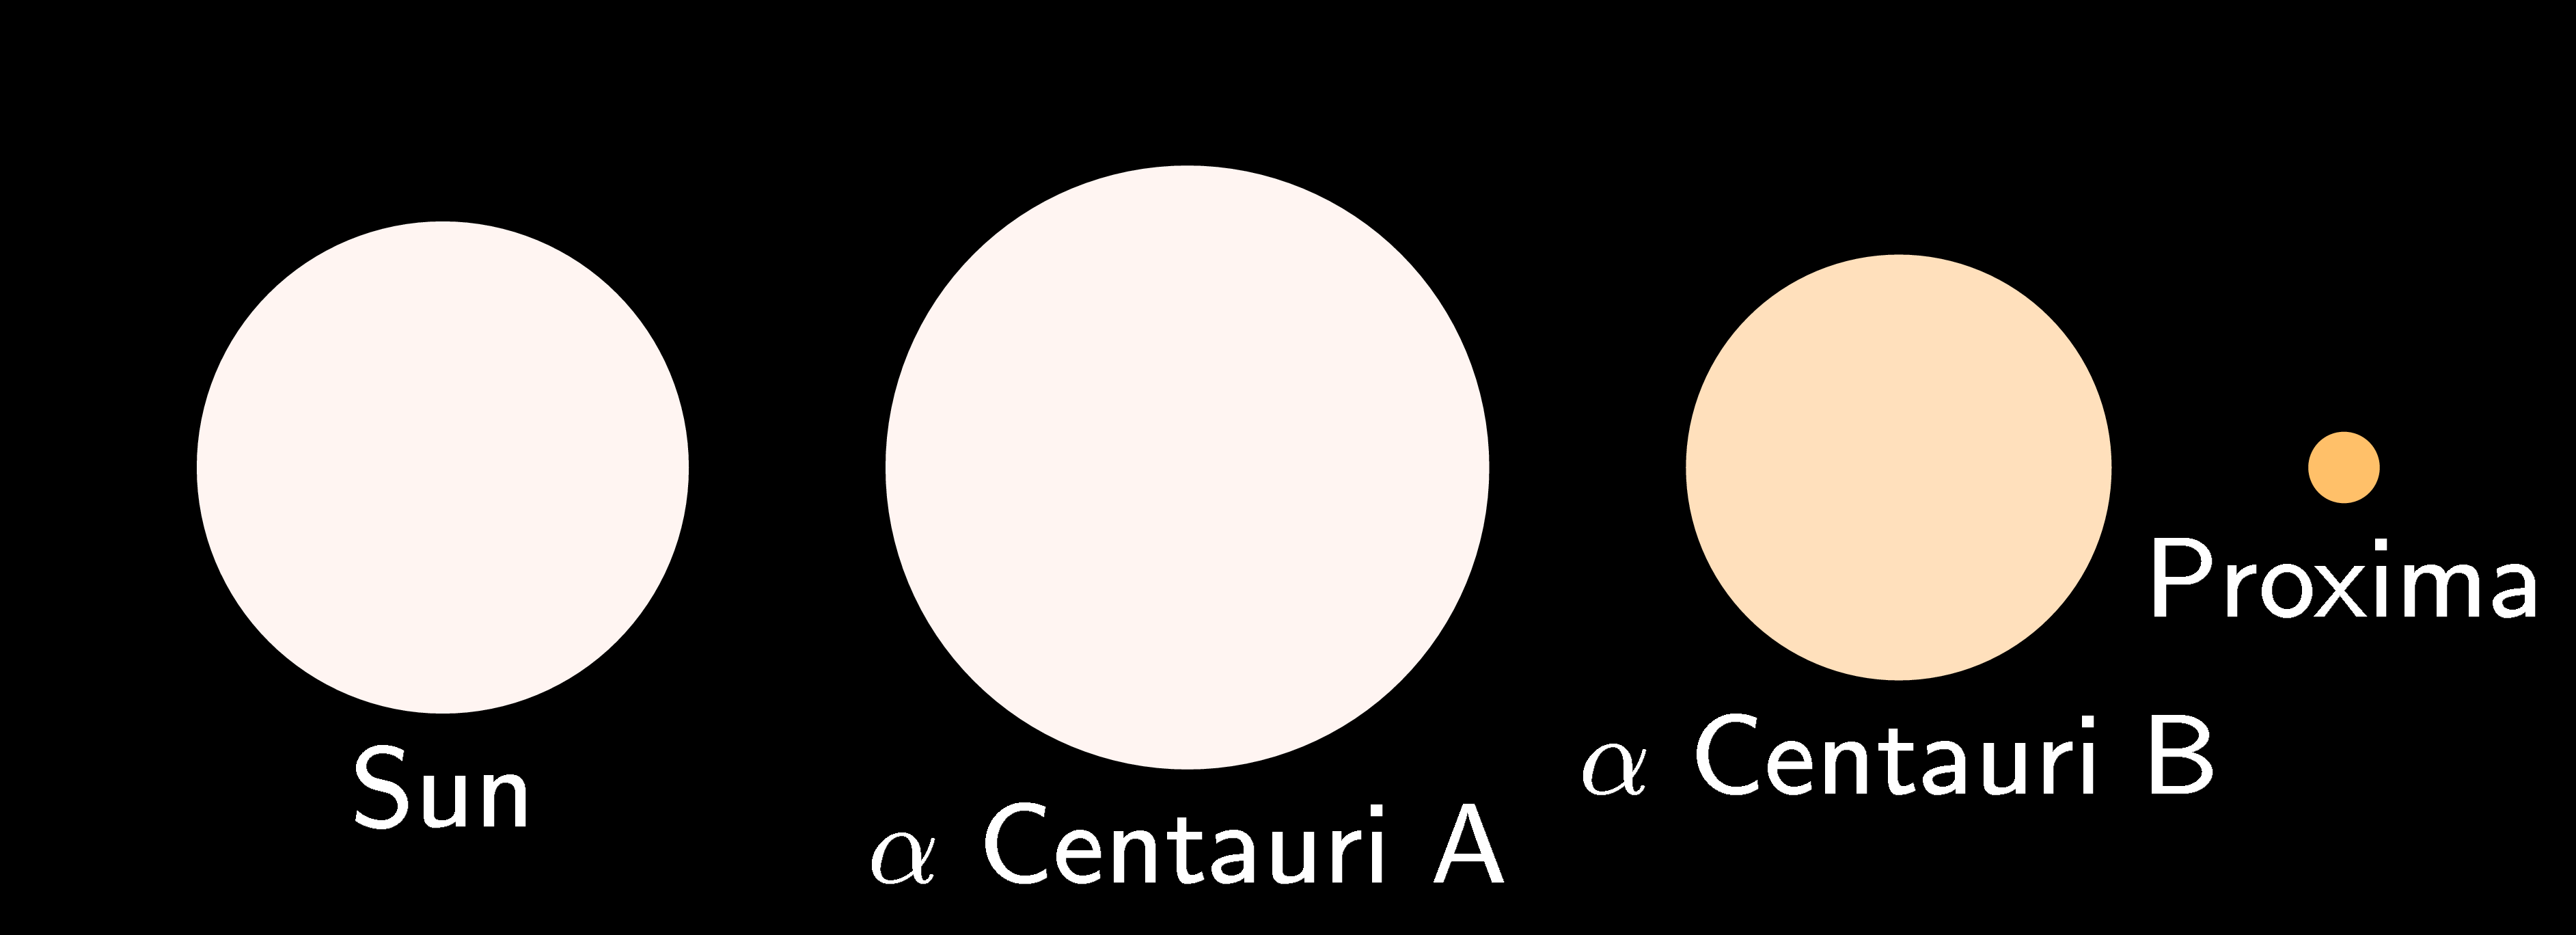 Comparaison de la taille de différentes étoiles. De gauche à droite: le Soleil, α Centauri A, α Centauri B et Proxima Centauri. [Wikimedia - CC BY-SA 3.0]